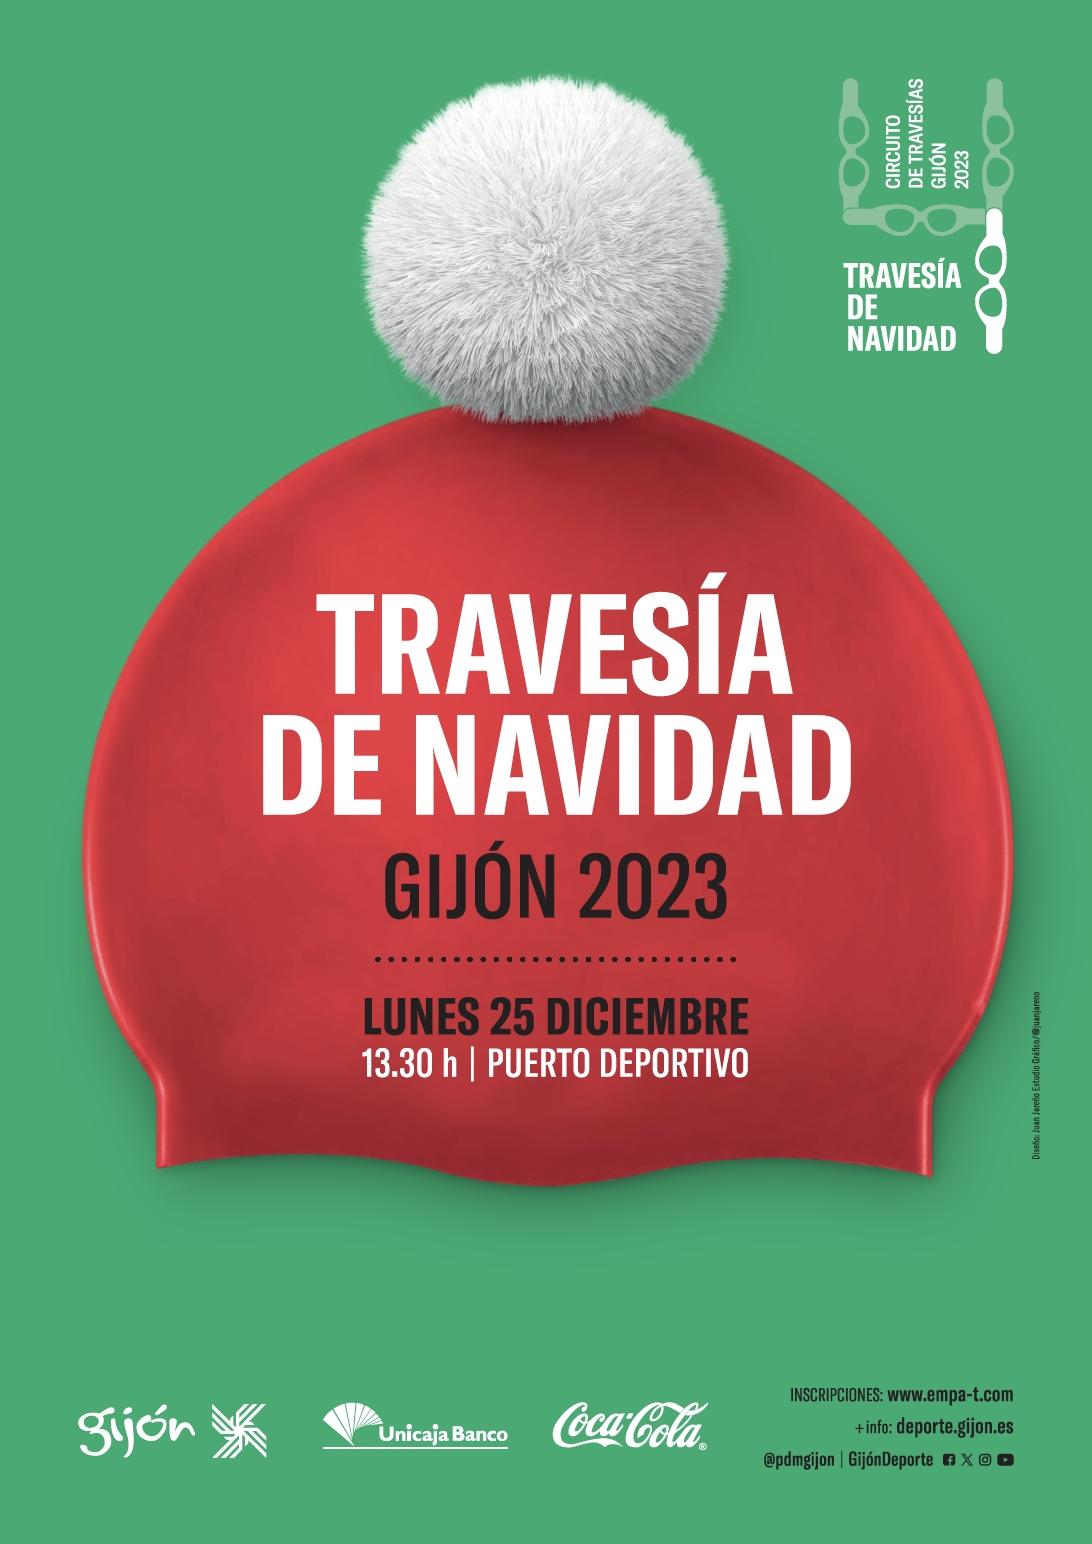 TRAVESÍA DE NAVIDAD 2023 - Inscríbete